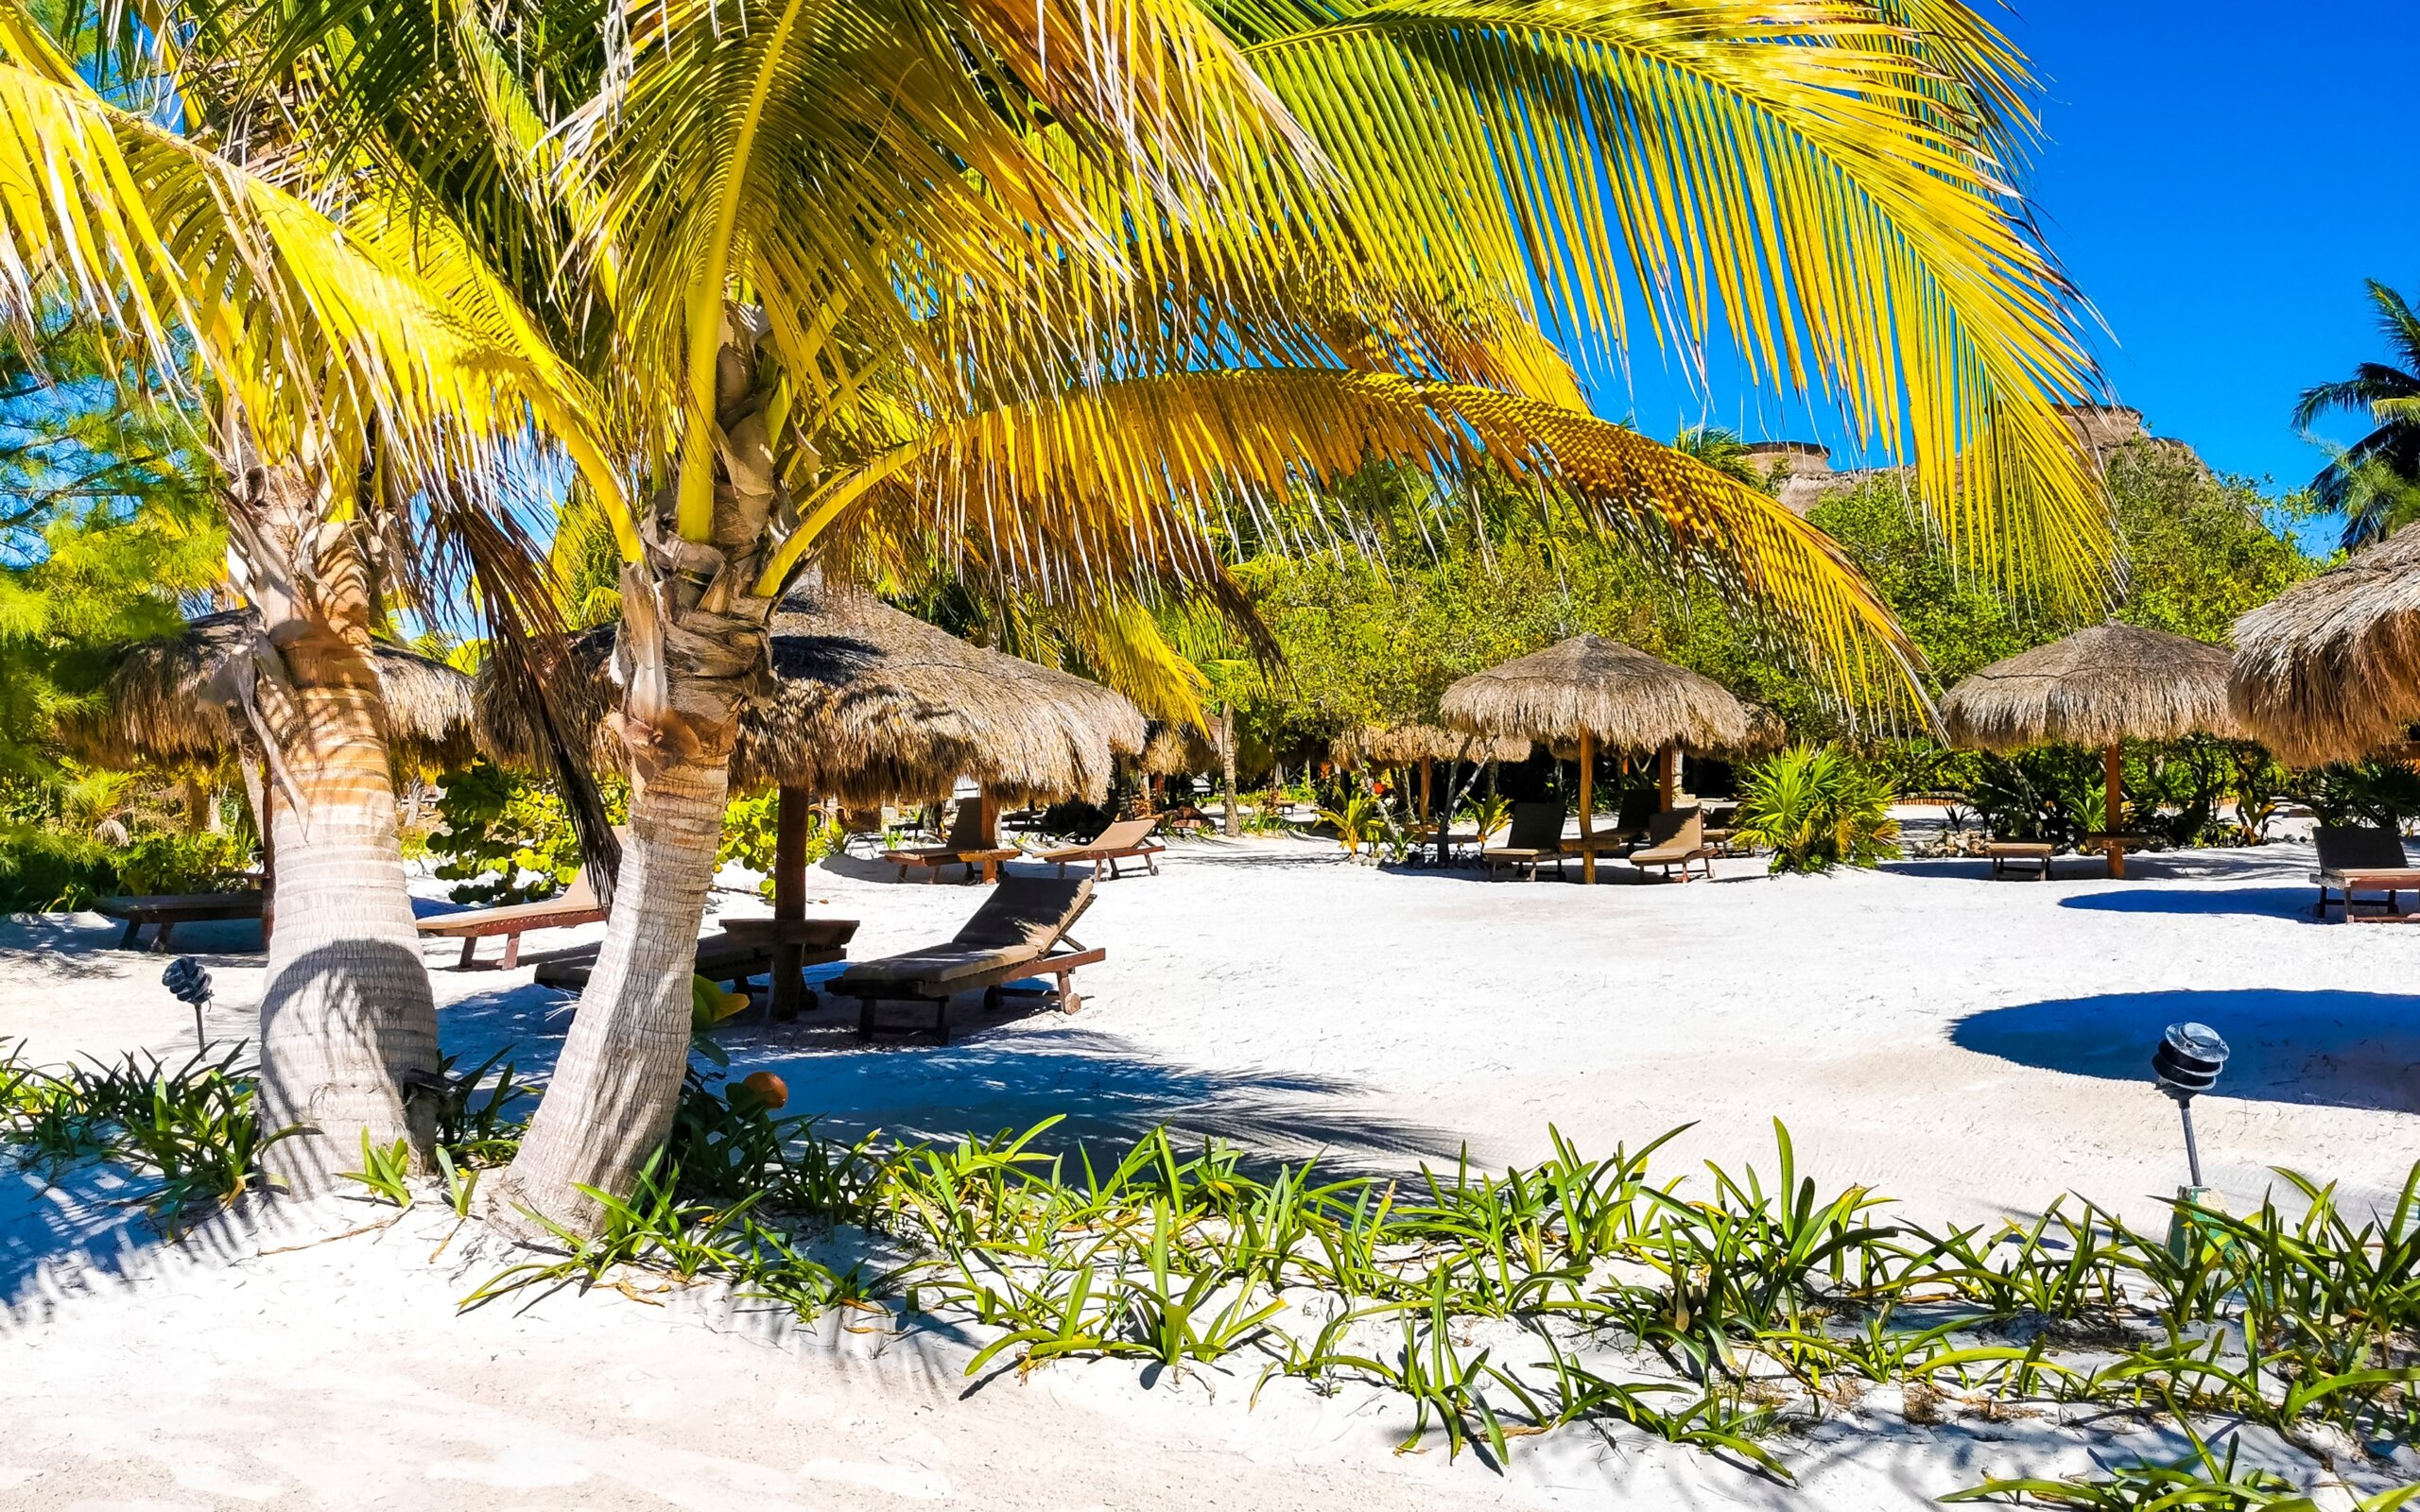 Kurorty i krajobraz z tropikalną przyrodą na pięknej wyspie Holbox w Quintana Roo w Meksyku.